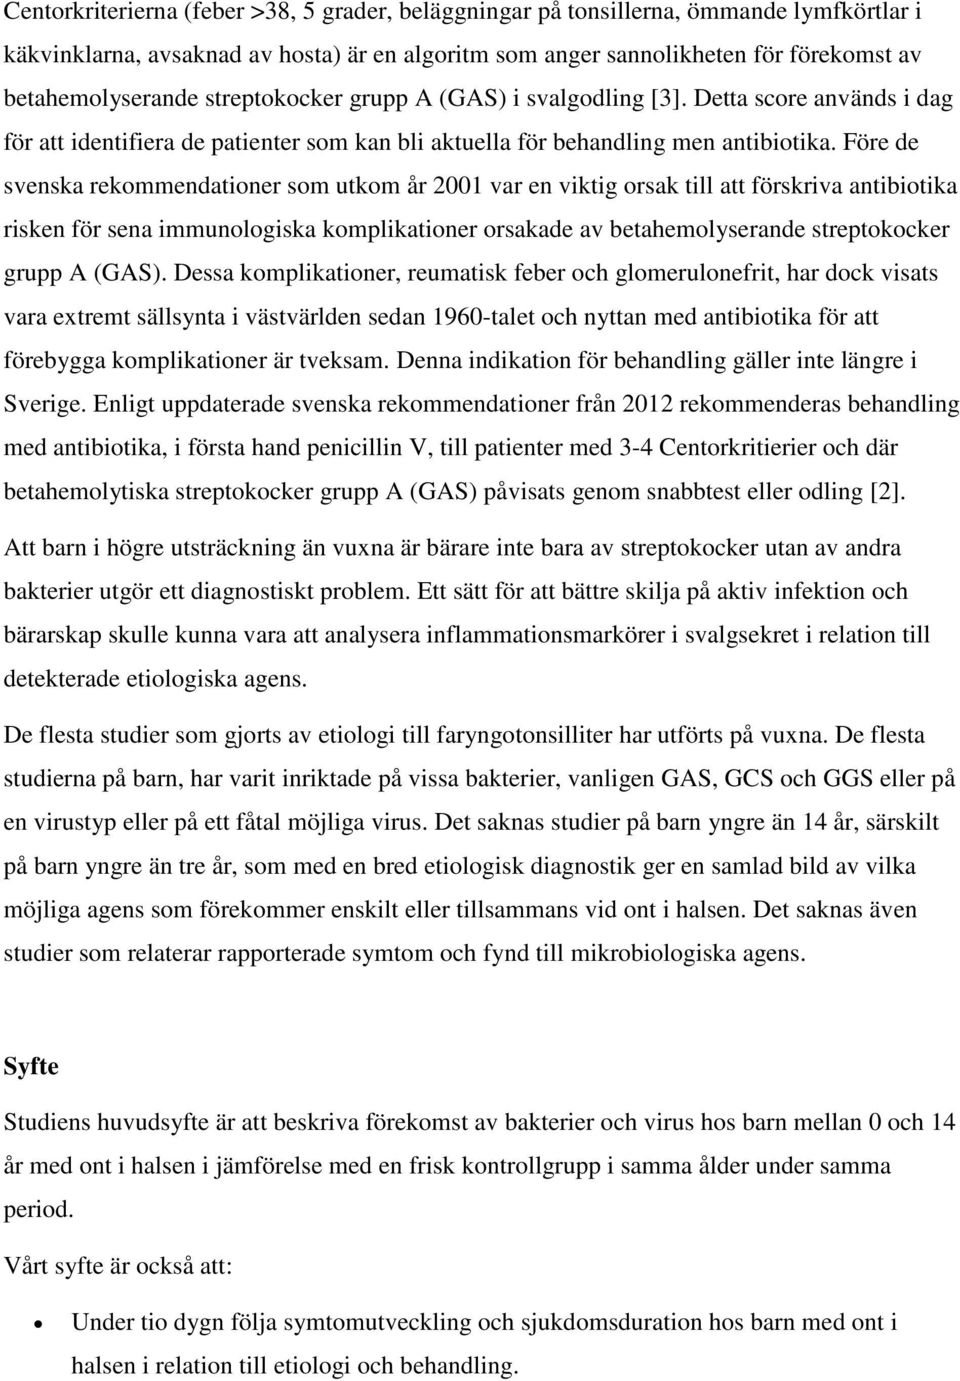 Före de svenska rekommendationer som utkom år 2001 var en viktig orsak till att förskriva antibiotika risken för sena immunologiska komplikationer orsakade av betahemolyserande streptokocker grupp A